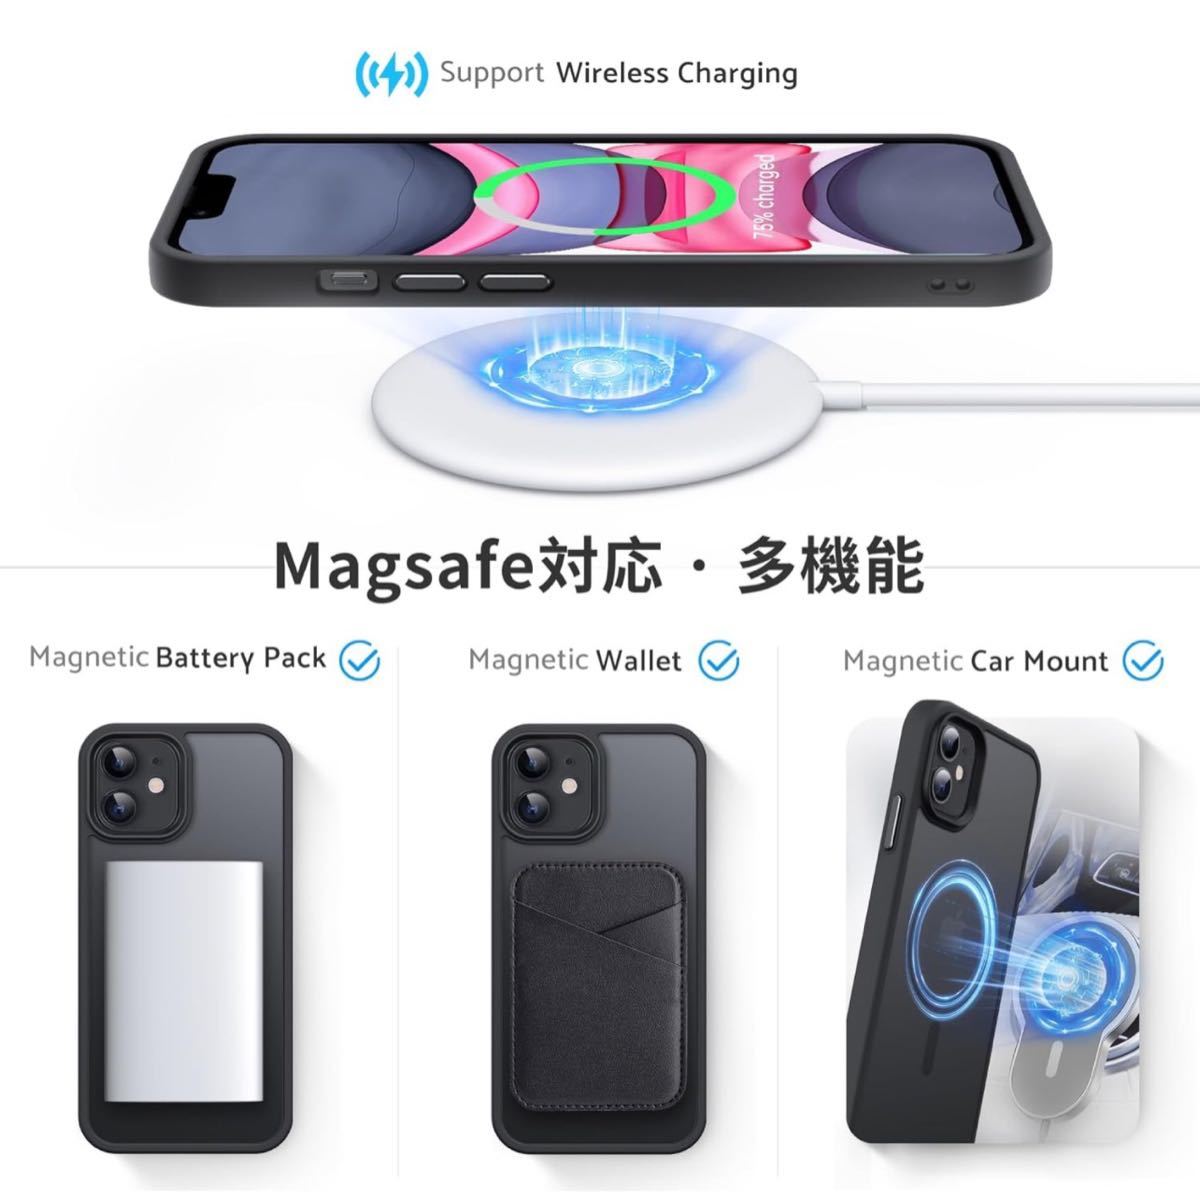 Anqrp iPhone11 用 ケース マグネット搭載 [Magsafe対応] ワイヤレス充電対応 半透明 マット感 耐衝撃 6.1インチ ブラック_画像6